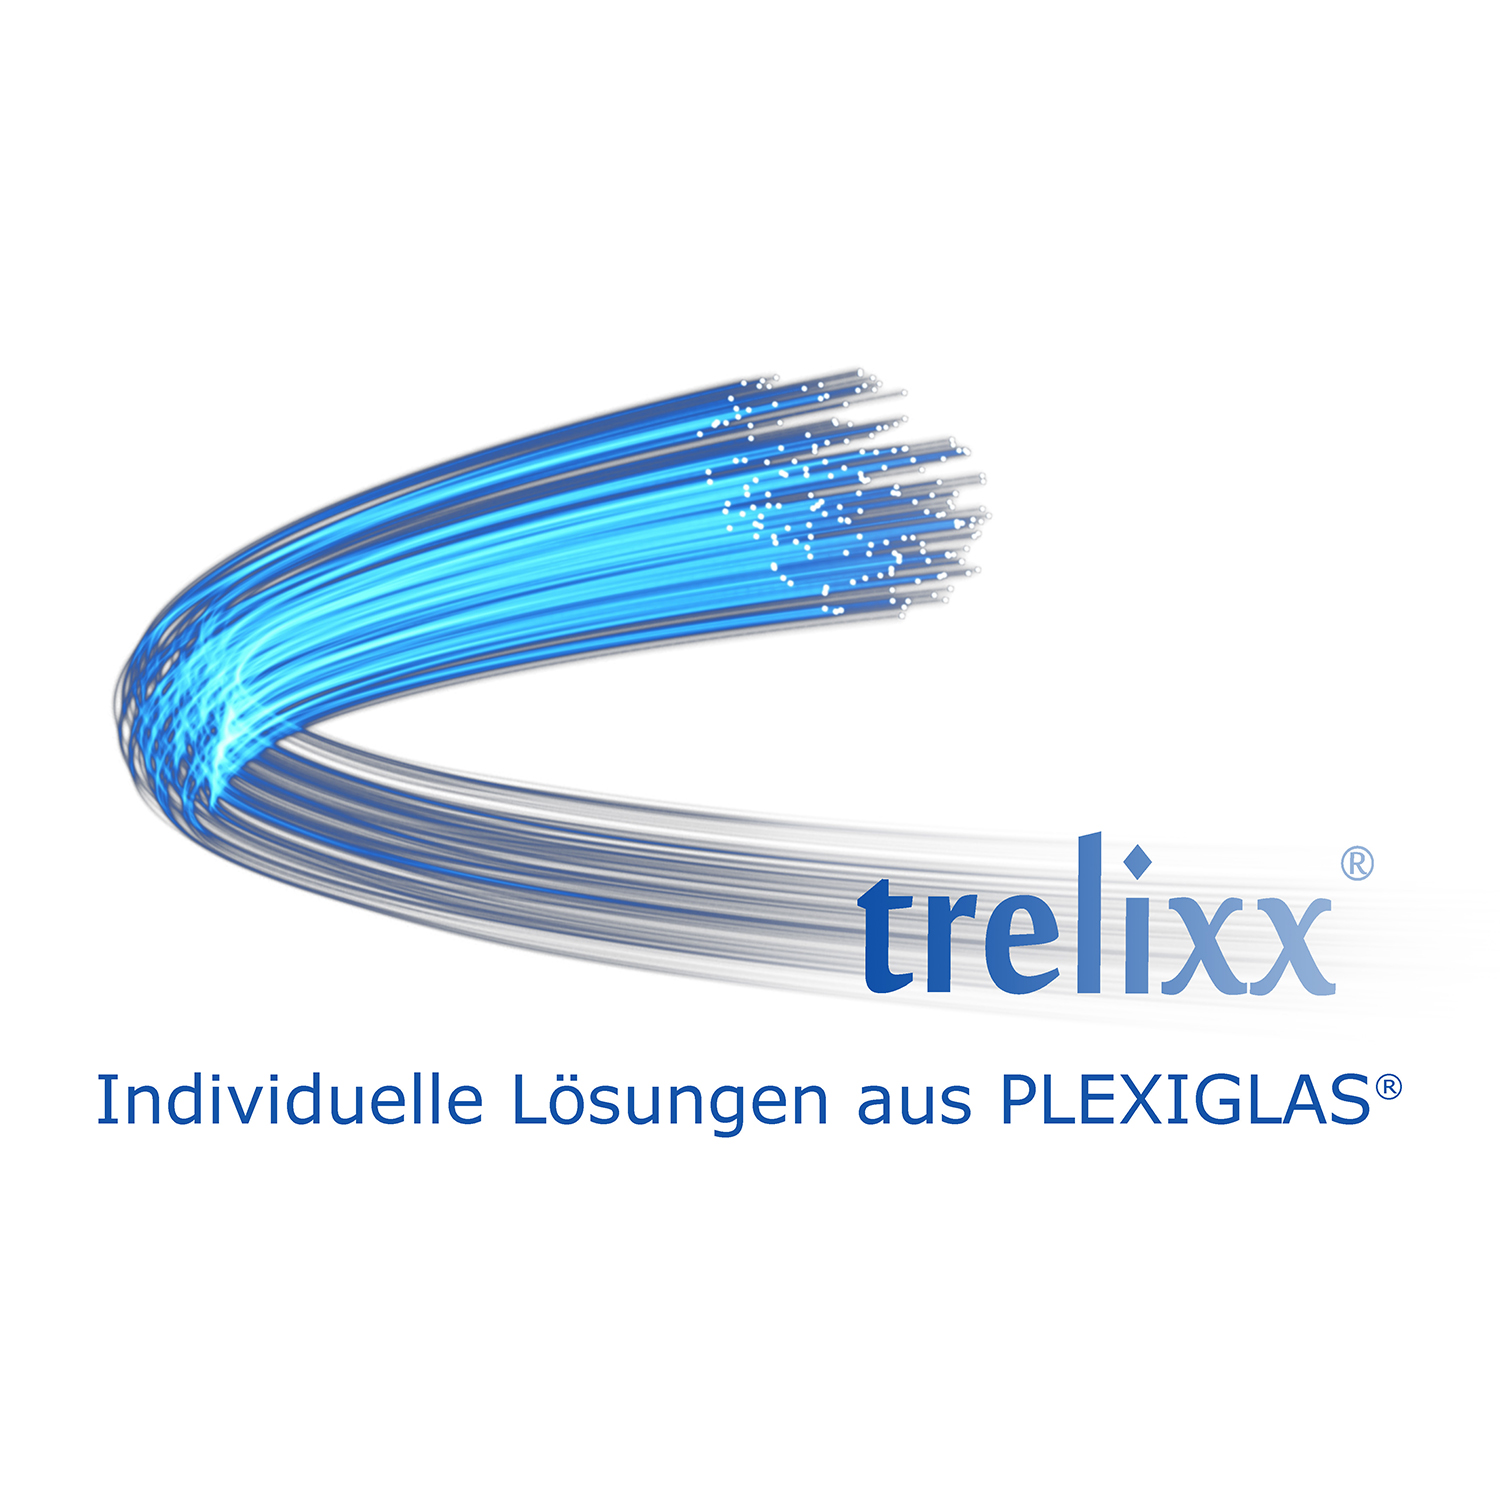 trelixx GmbH